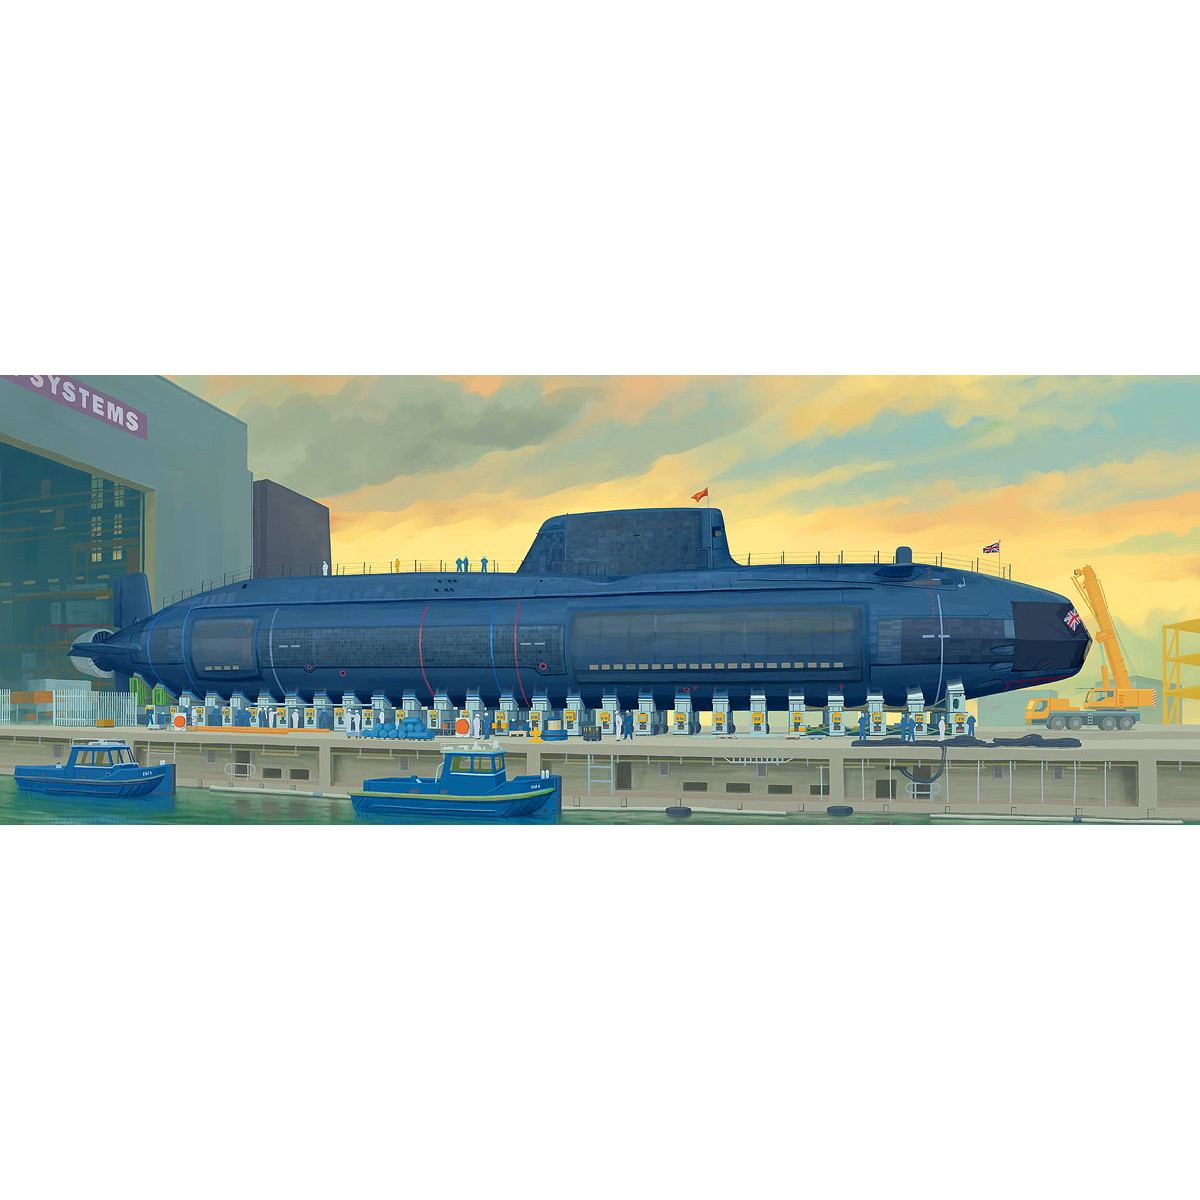 【新製品】05909 イギリス海軍 原子力潜水艦 HMS アスチュート